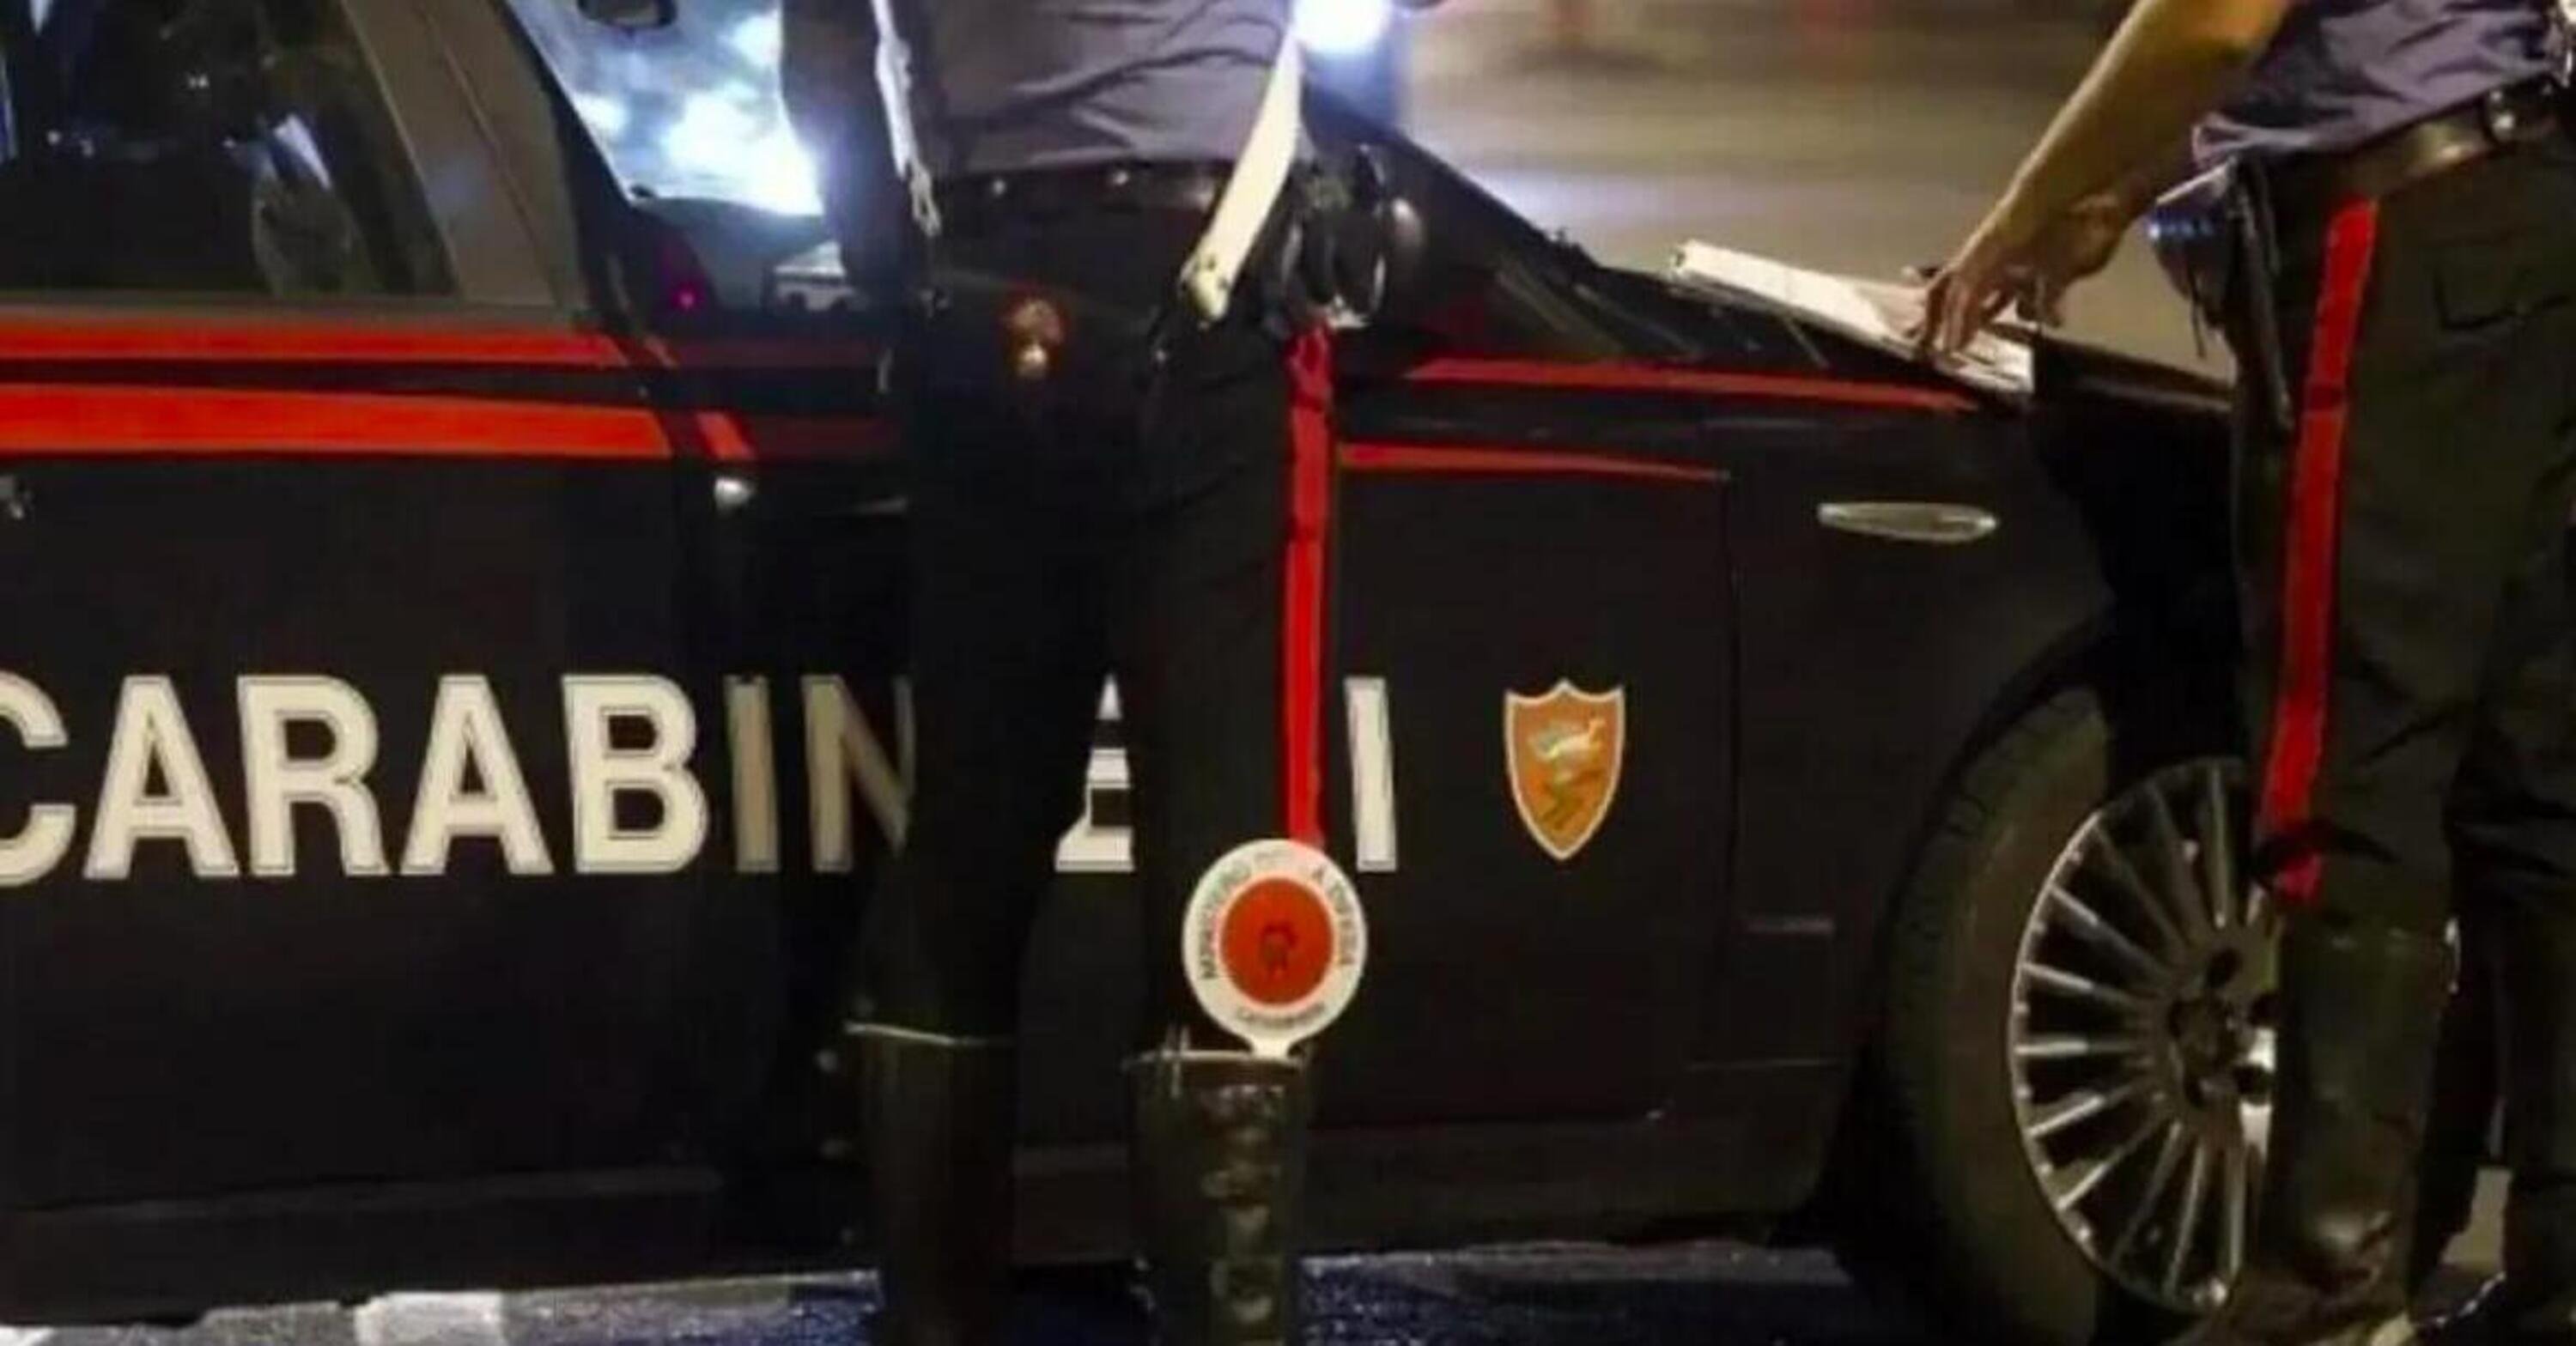 Allarme corse clandestine in moto a Parabiago, intervengono i carabinieri